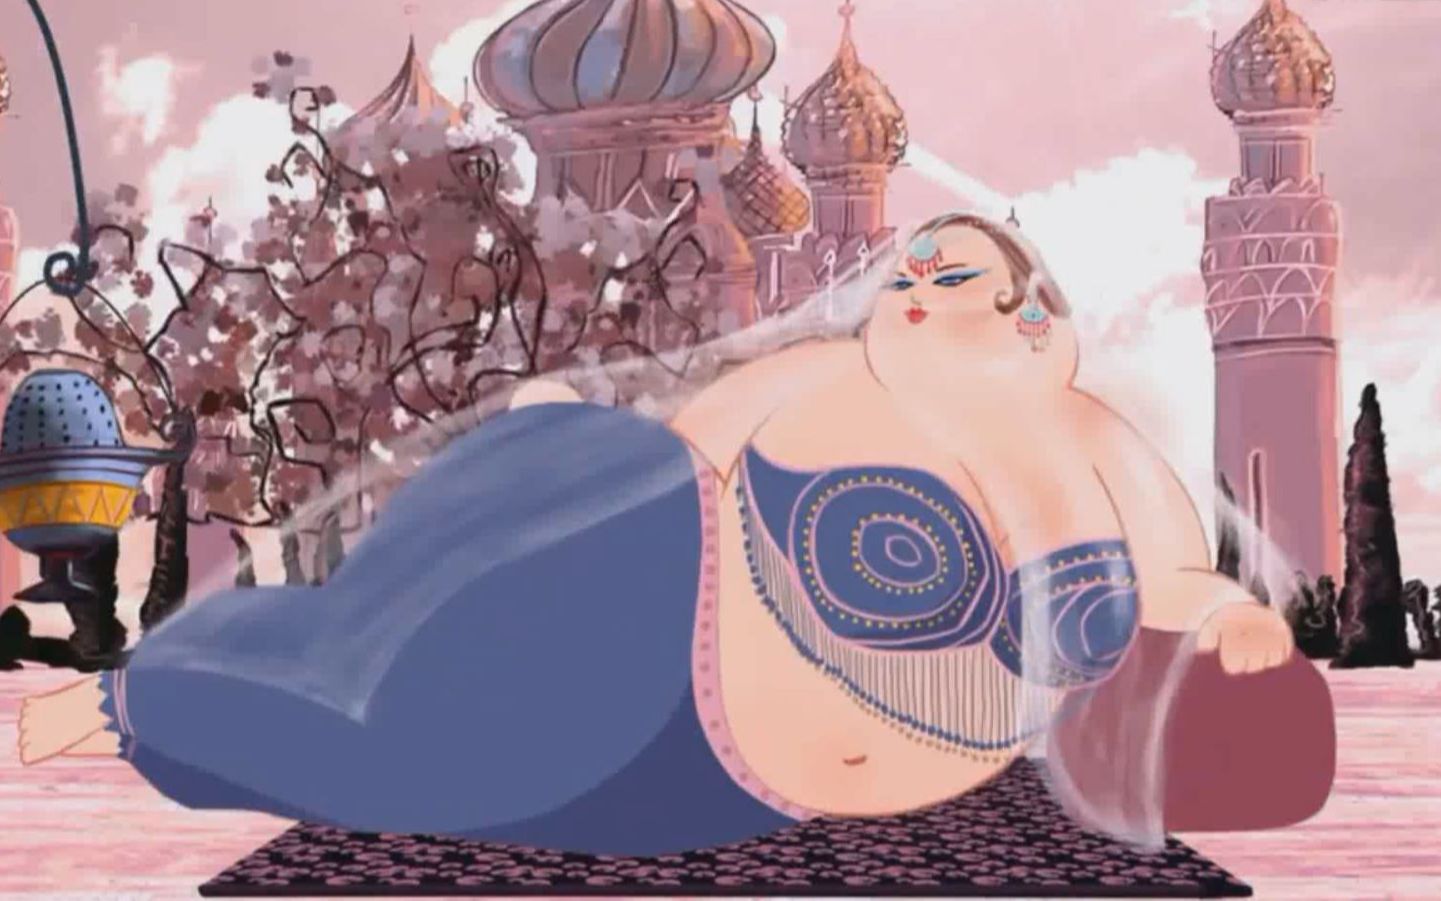 画风油腻的动画,全世界以胖为美,大象腿成为美女的象征